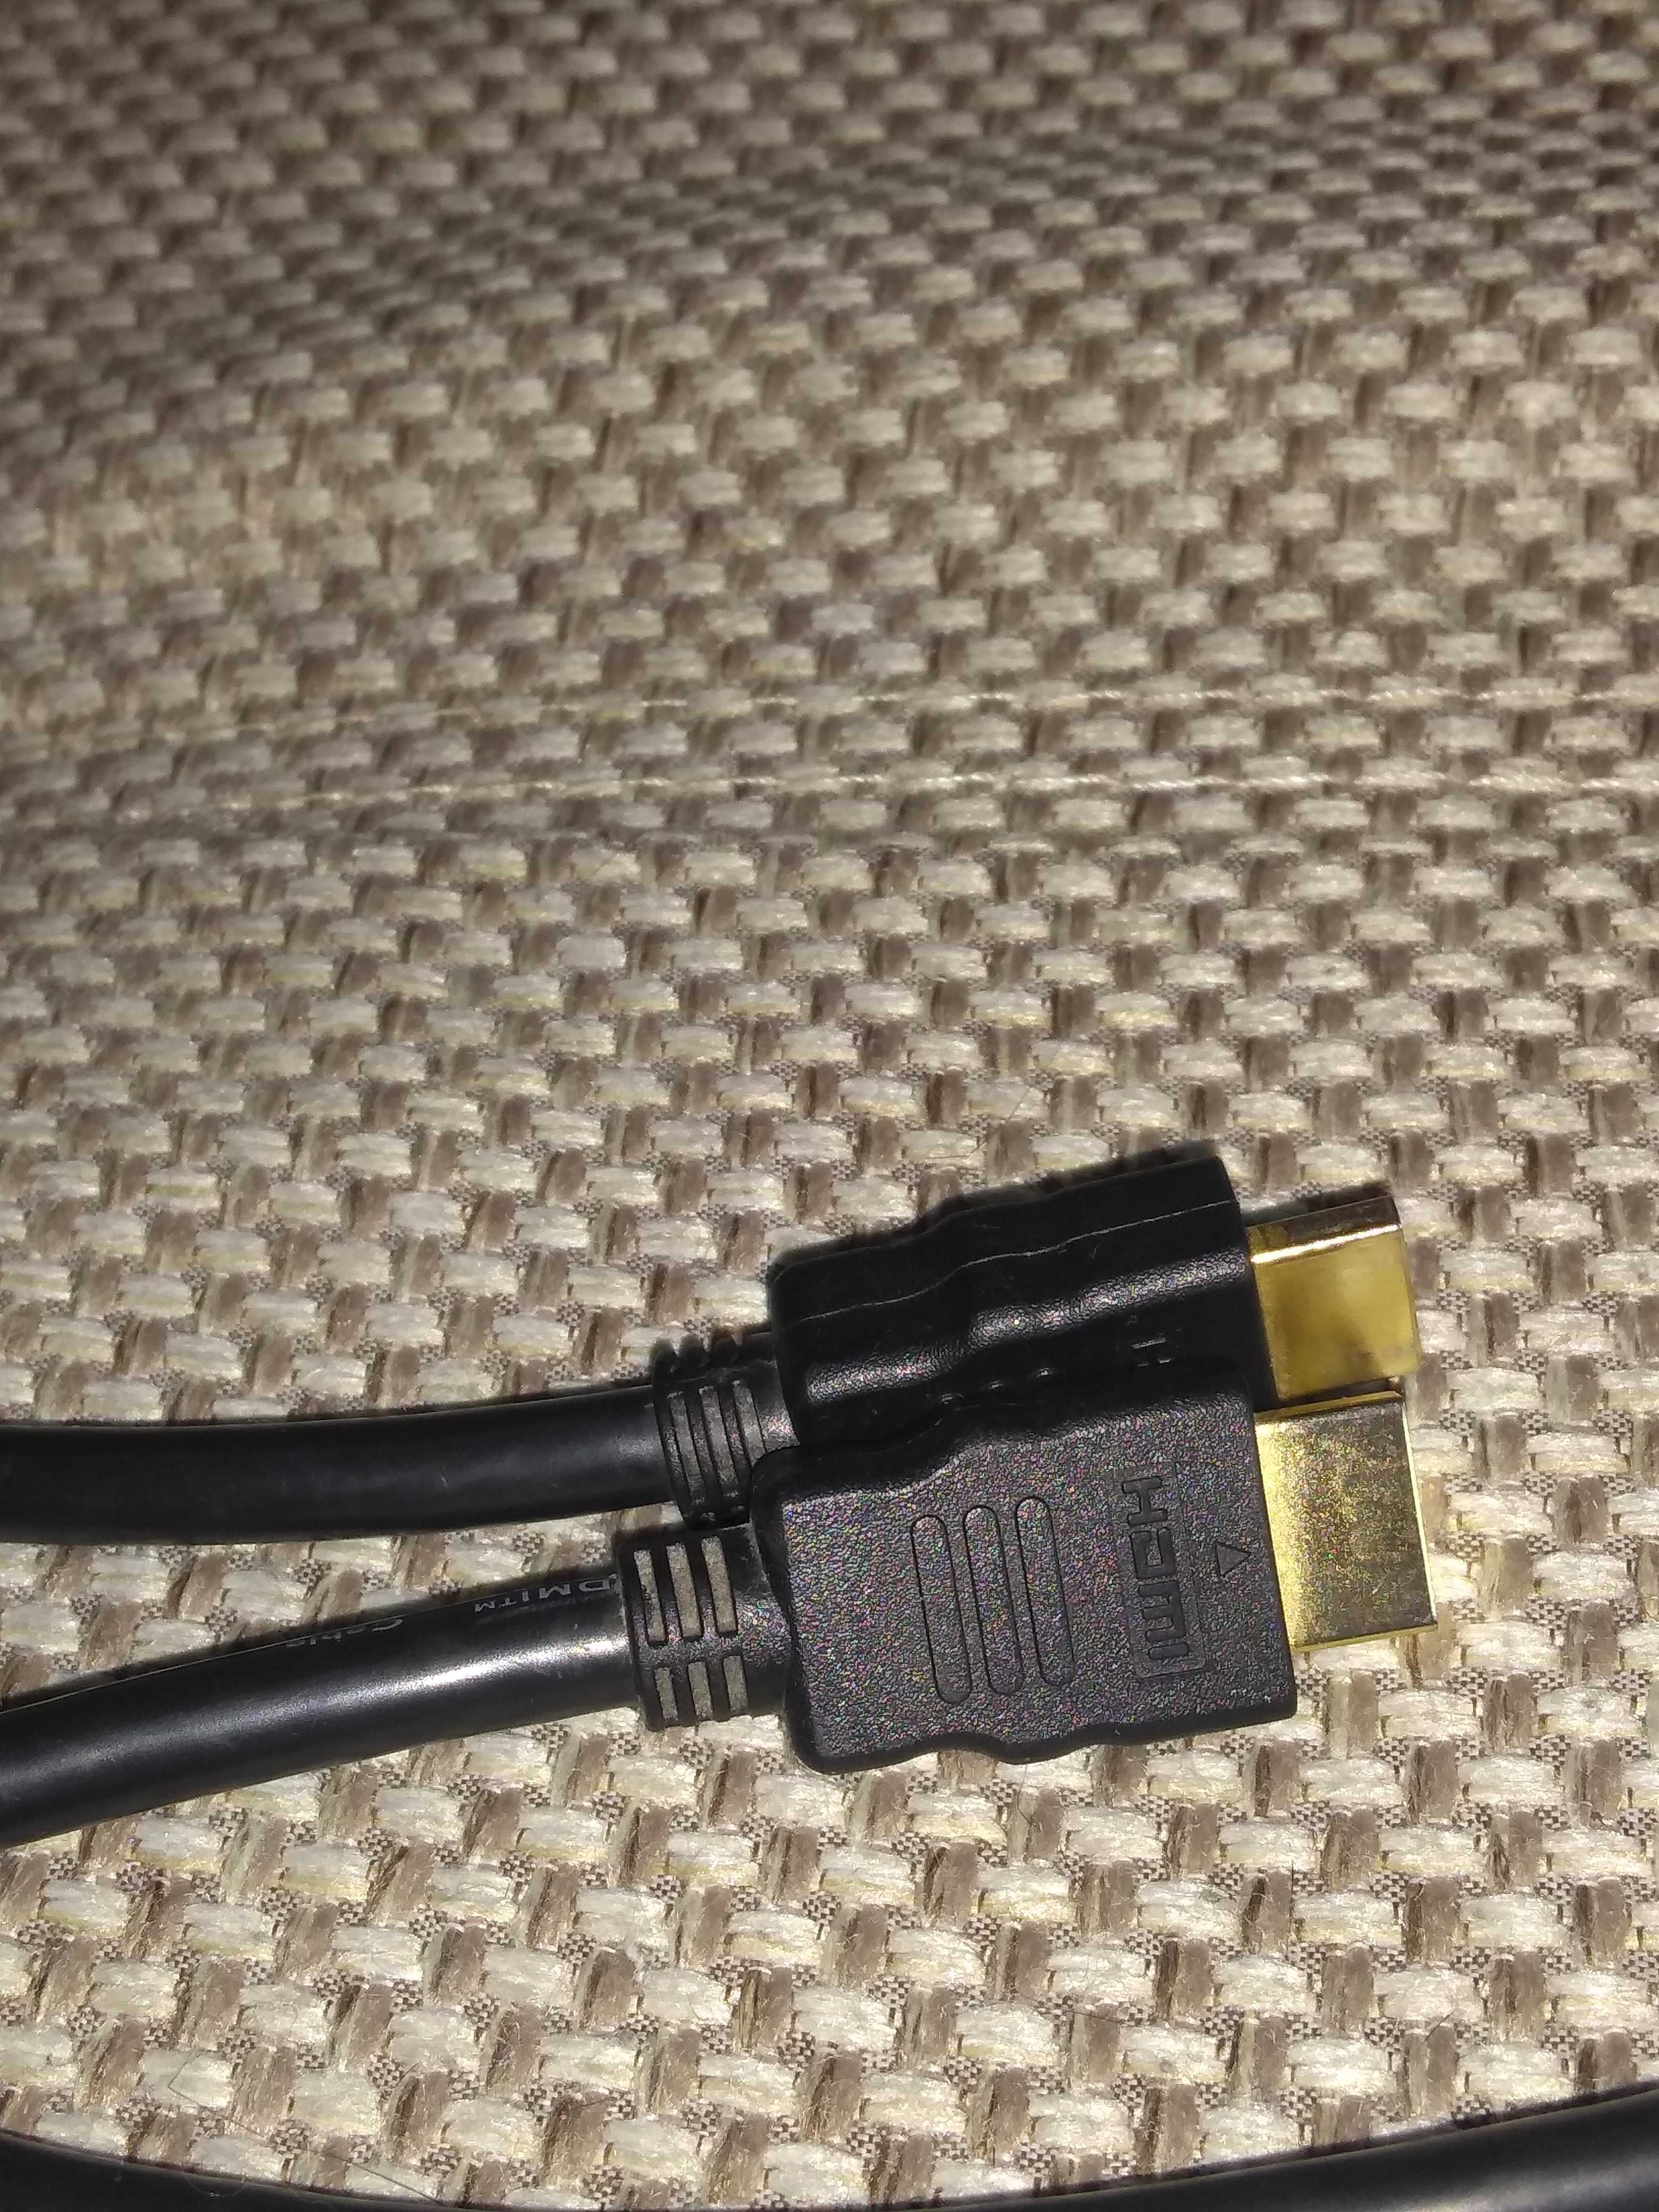 Продам кабель HDMI